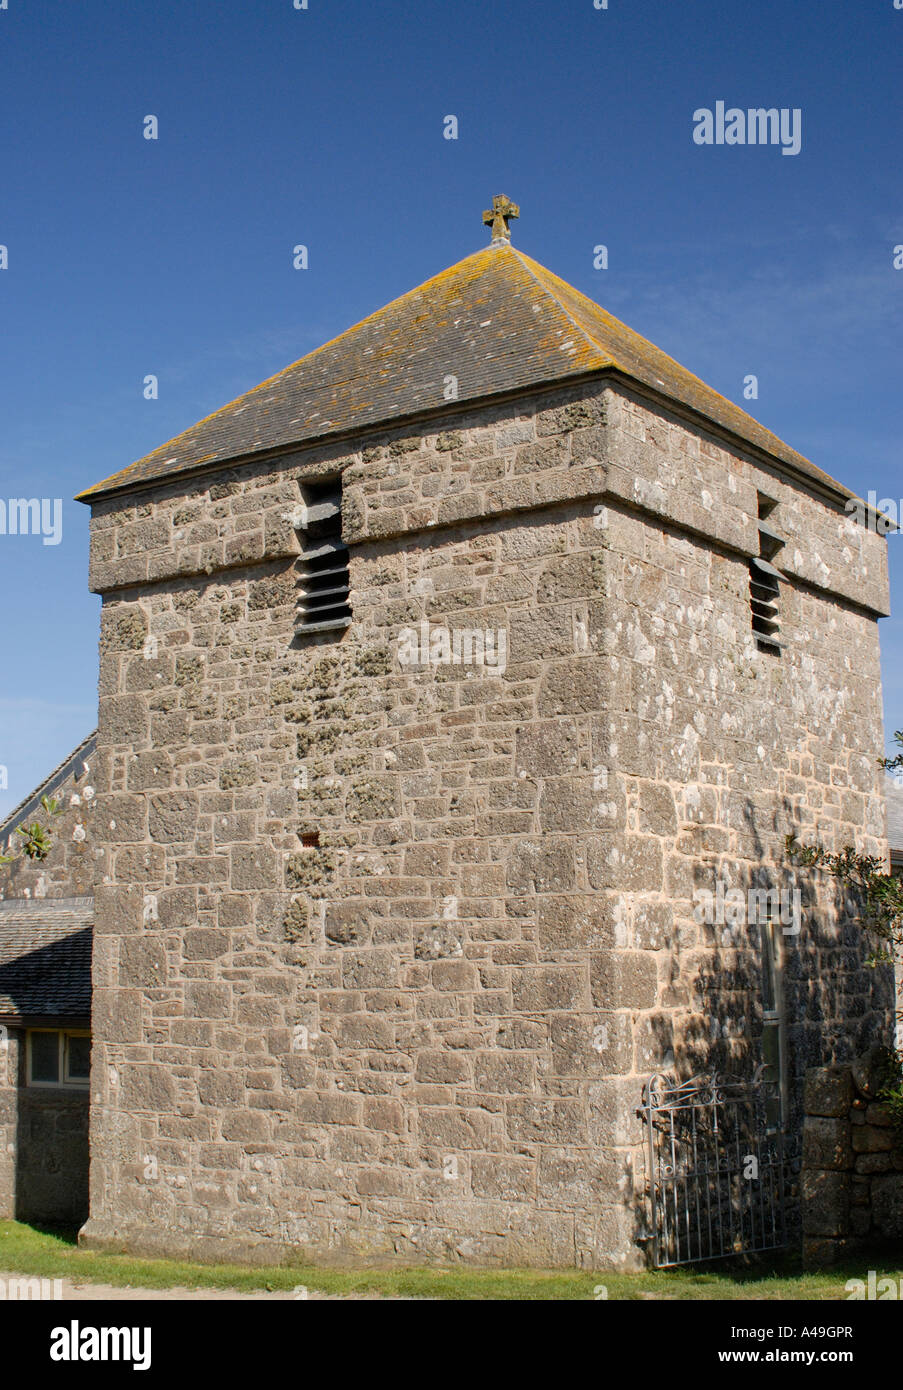 La tour en pierre de l'église Saint Tous Bryher Îles Scilly, Angleterre Royaume-uni 17 Septembre 2006 Banque D'Images